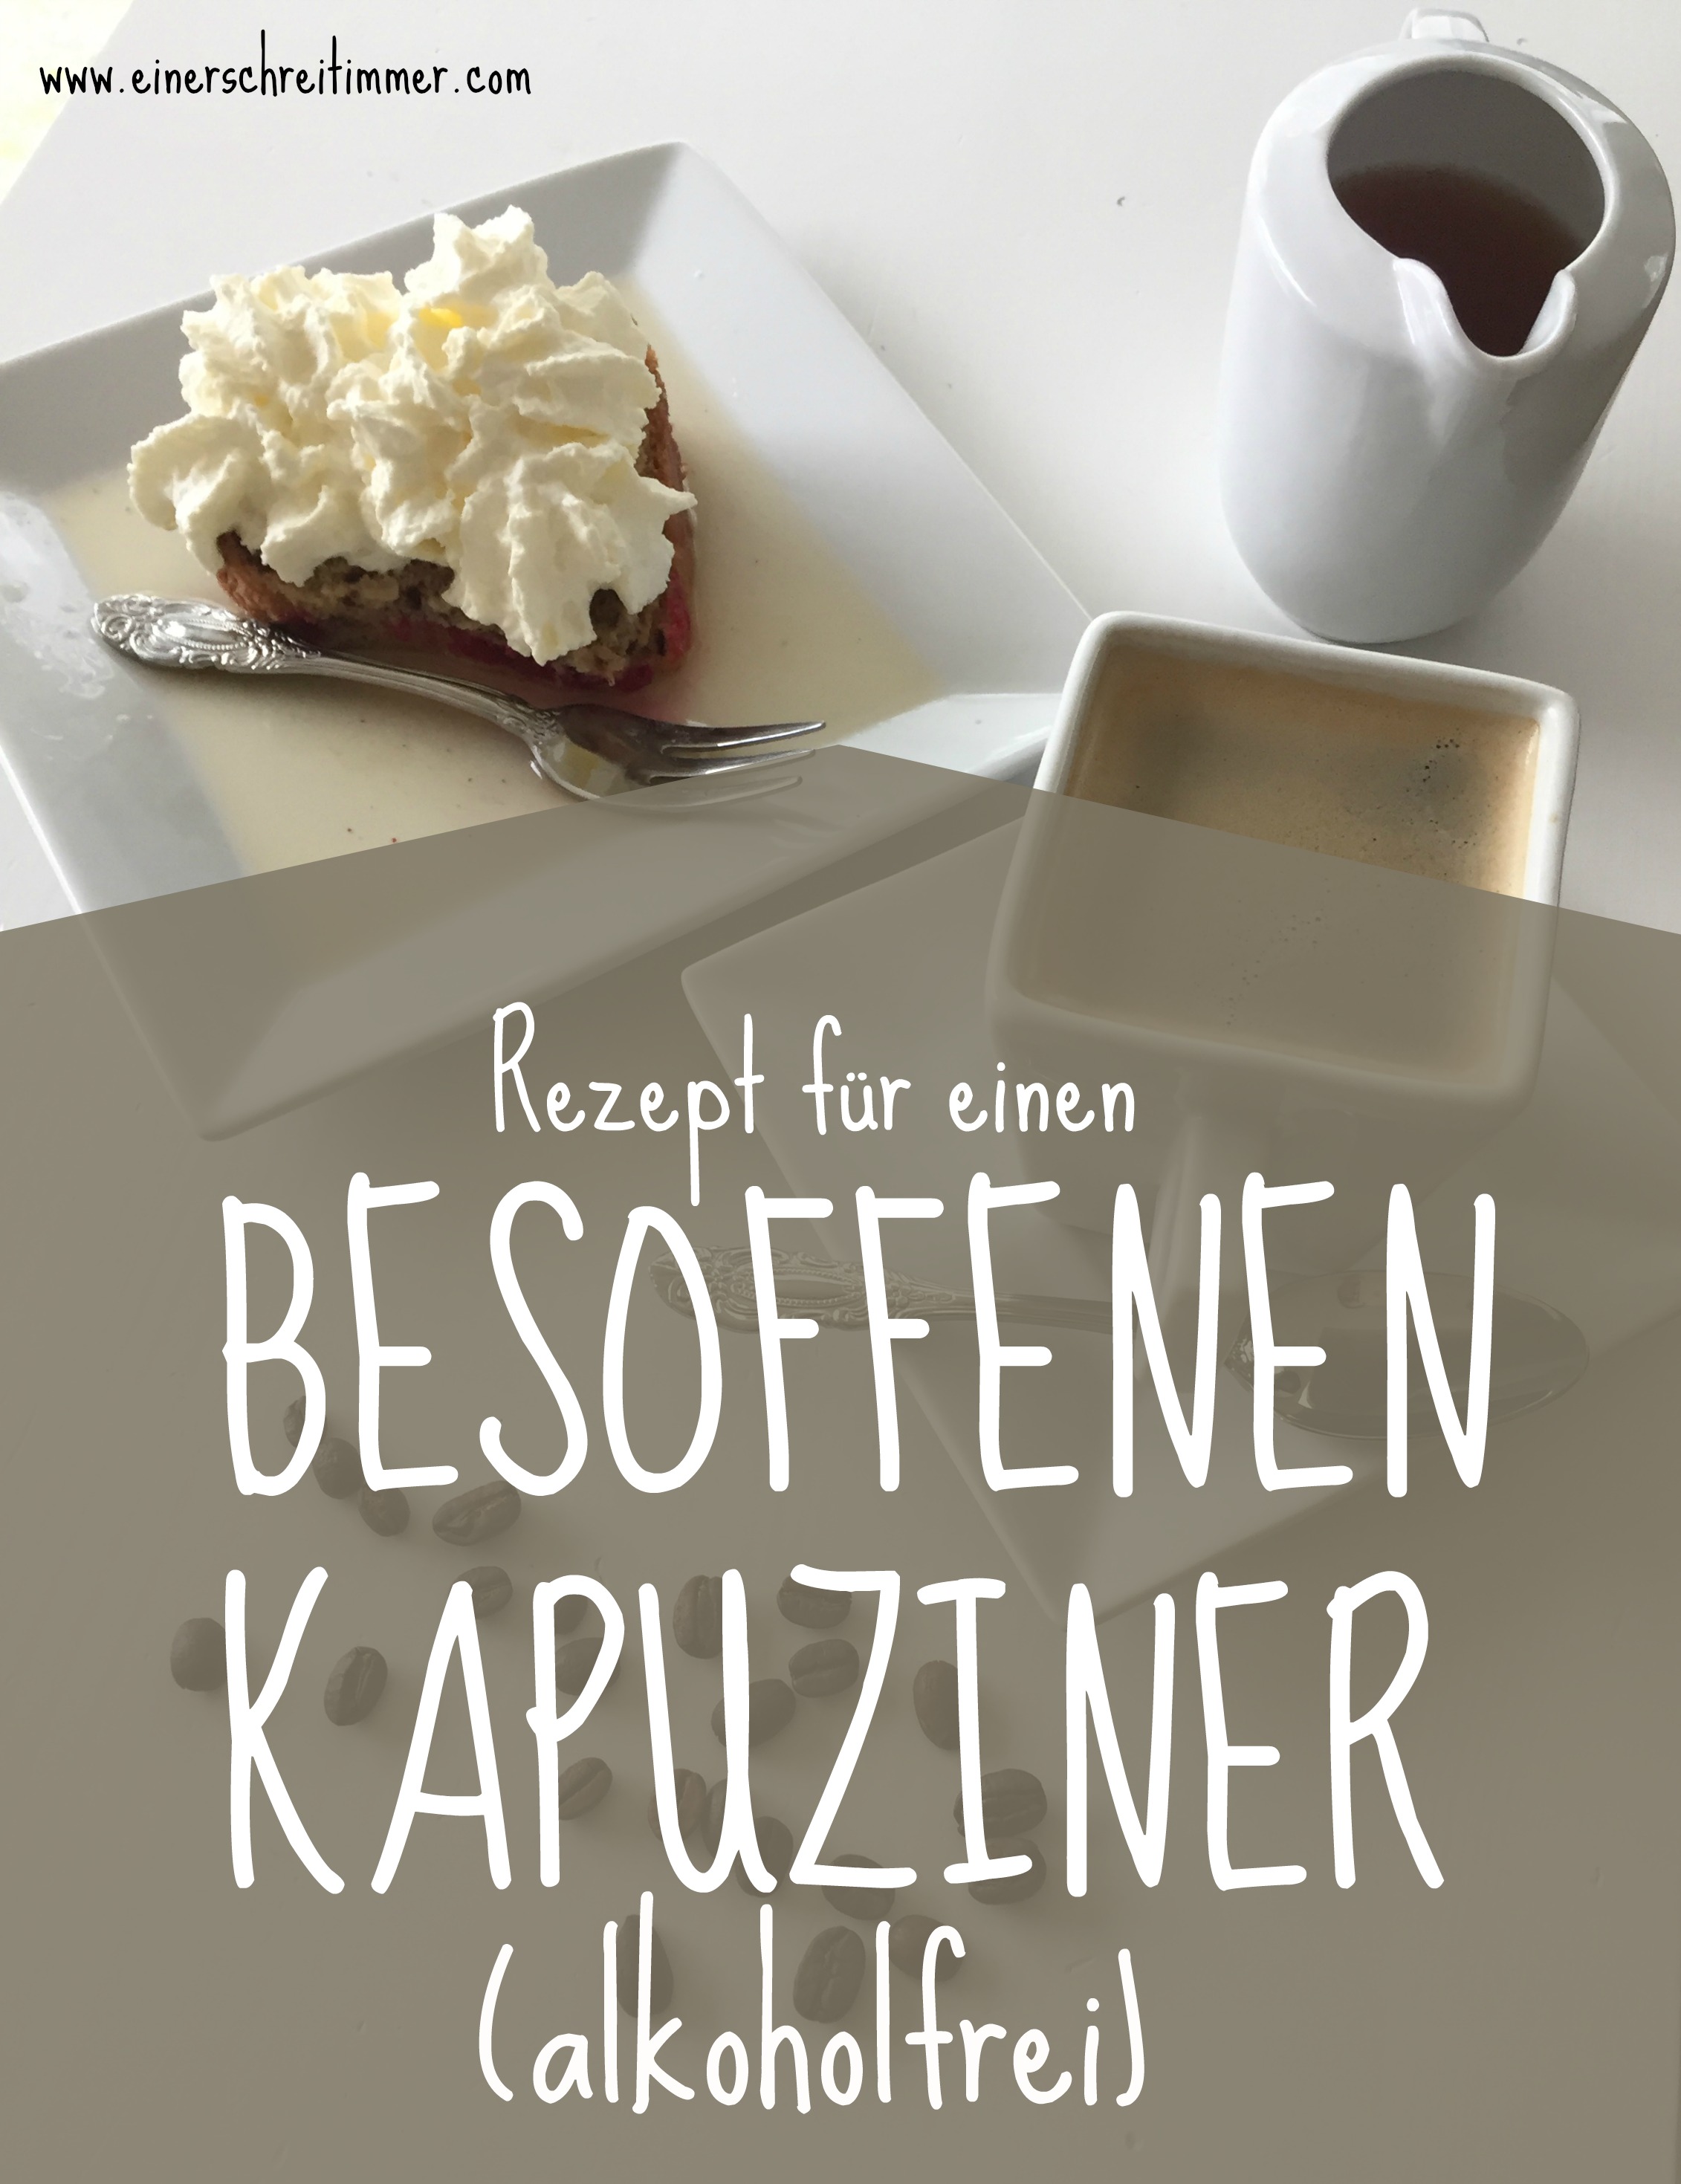 Rezept für einen "Besoffenen Kapuziner" - traditionelle österreichische Resteküche. 